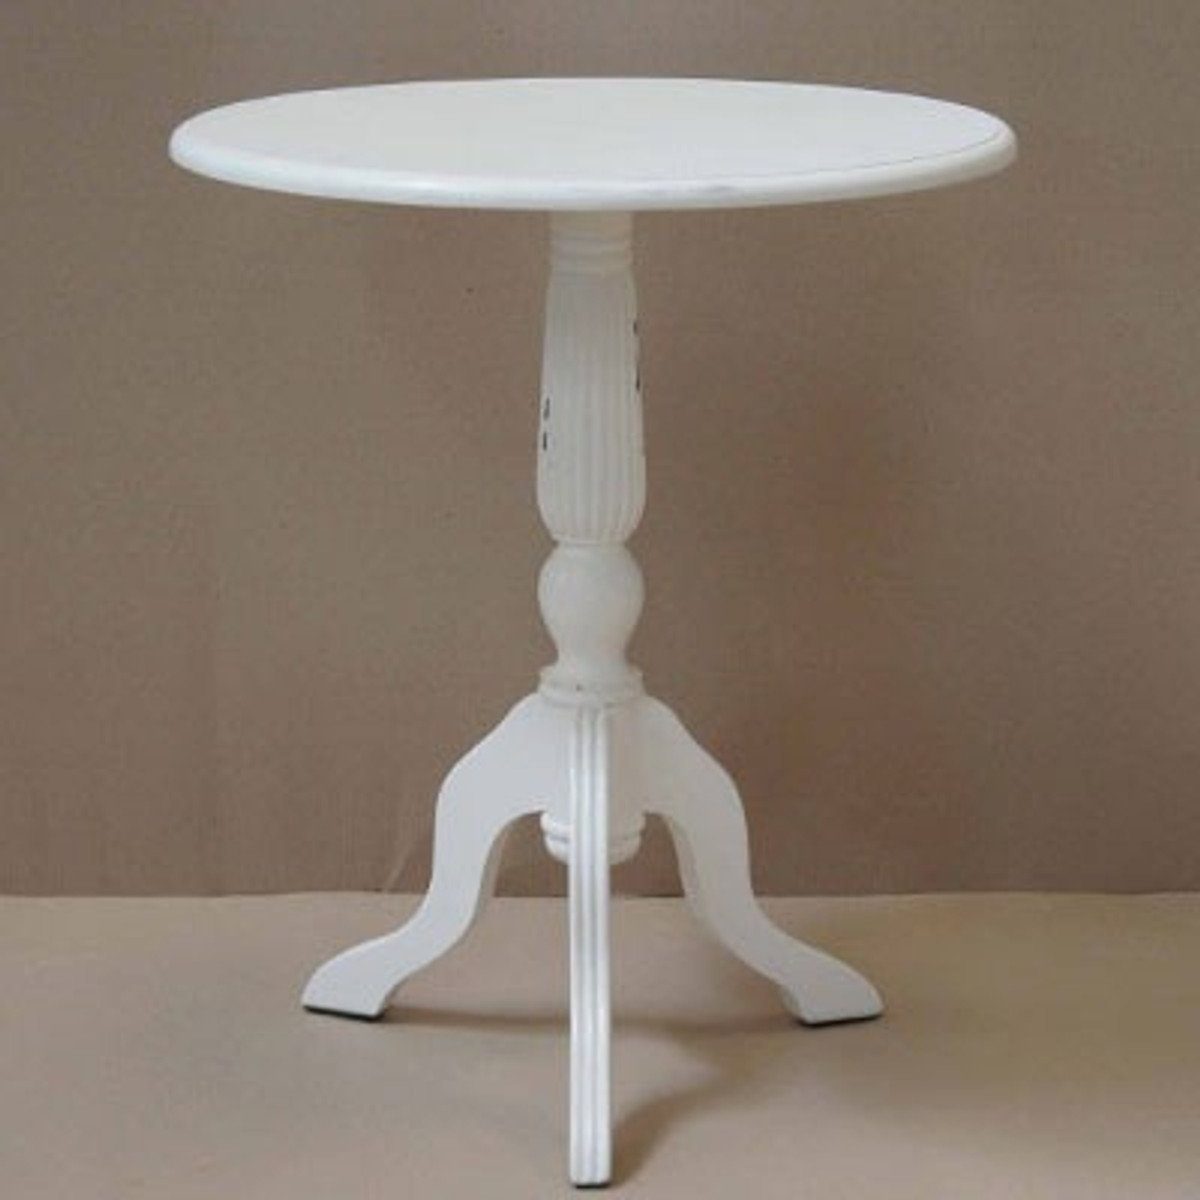 Casa Padrino Beistelltisch Barock Beistelltisch Mahagoni Holz Weiß Antik Stil 60 x 60 x H70 cm - Jugendstil Tisch